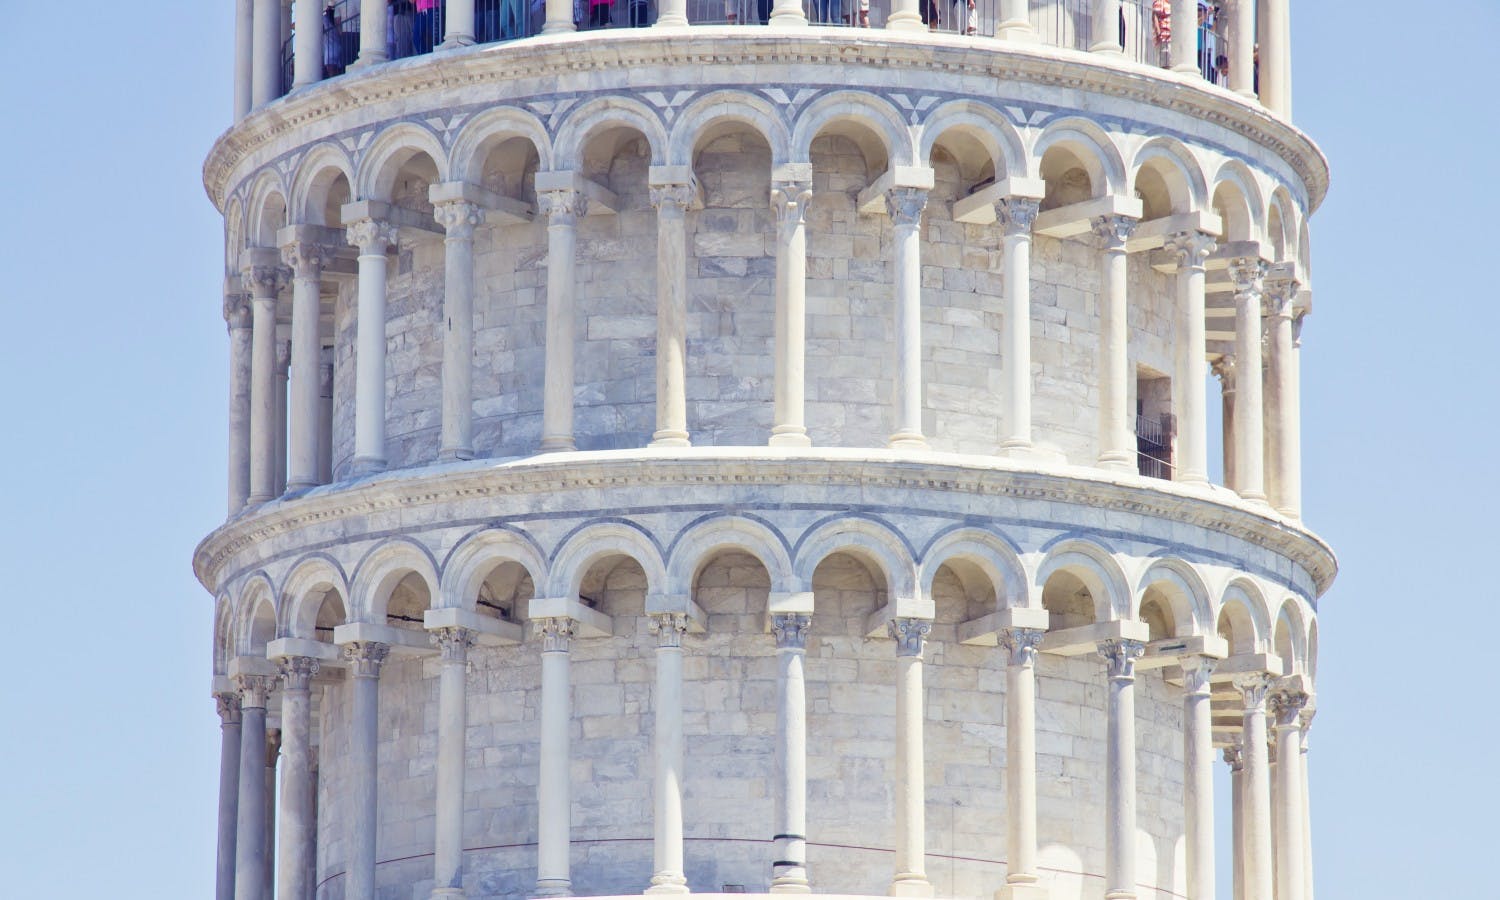 Escursione pomeridiana a Pisa con biglietti per la Torre Pendente e la Cattedrale con partenza da Firenze